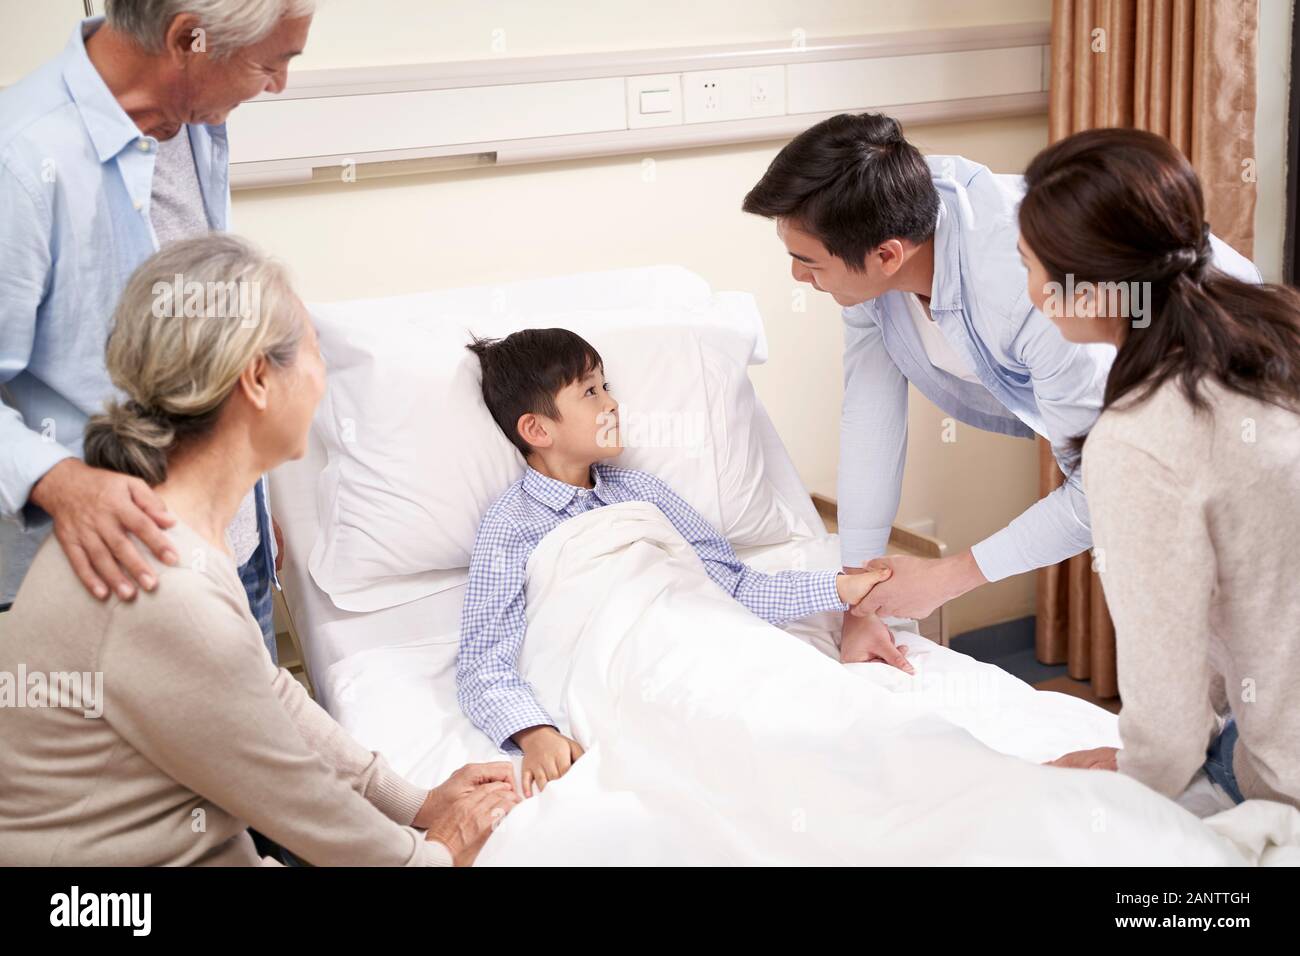 Cinq ans enfant asiatique Lying in Bed in hospital ward reçoit la visite de parents et de grands-parents Banque D'Images